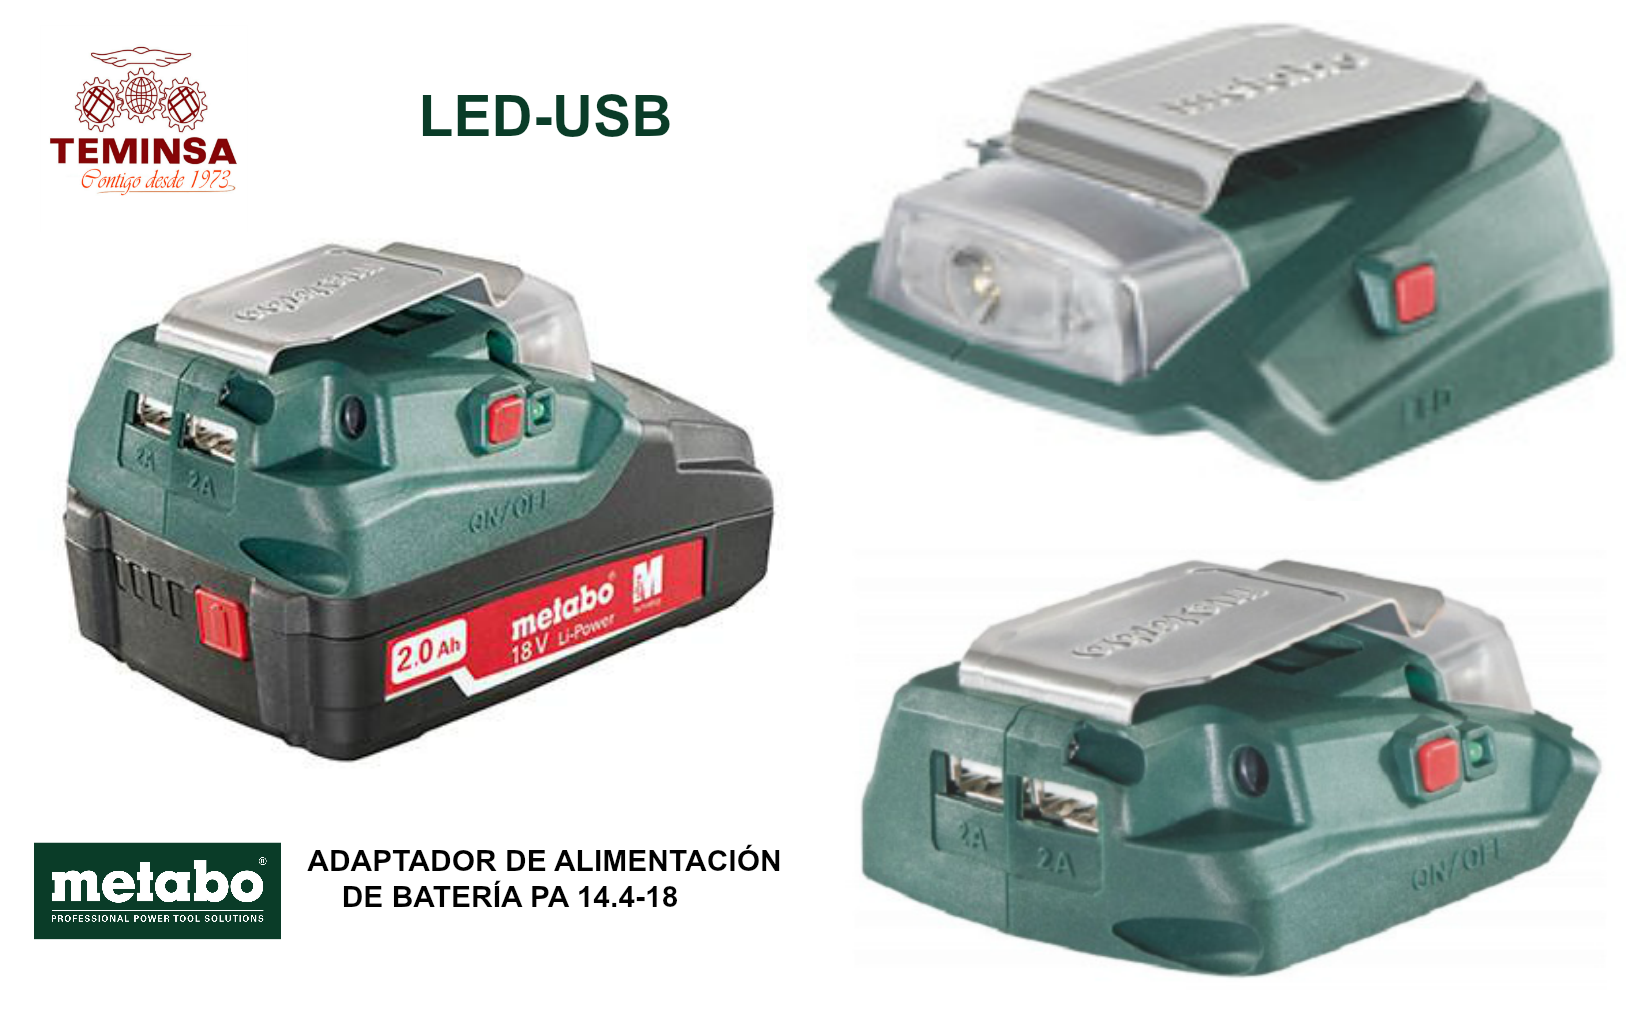 METABO ADAPTADOR DE ALIMENTACIÓN DE LA BATERÍA PA 14.4-18 LED-USB Teminsa Online